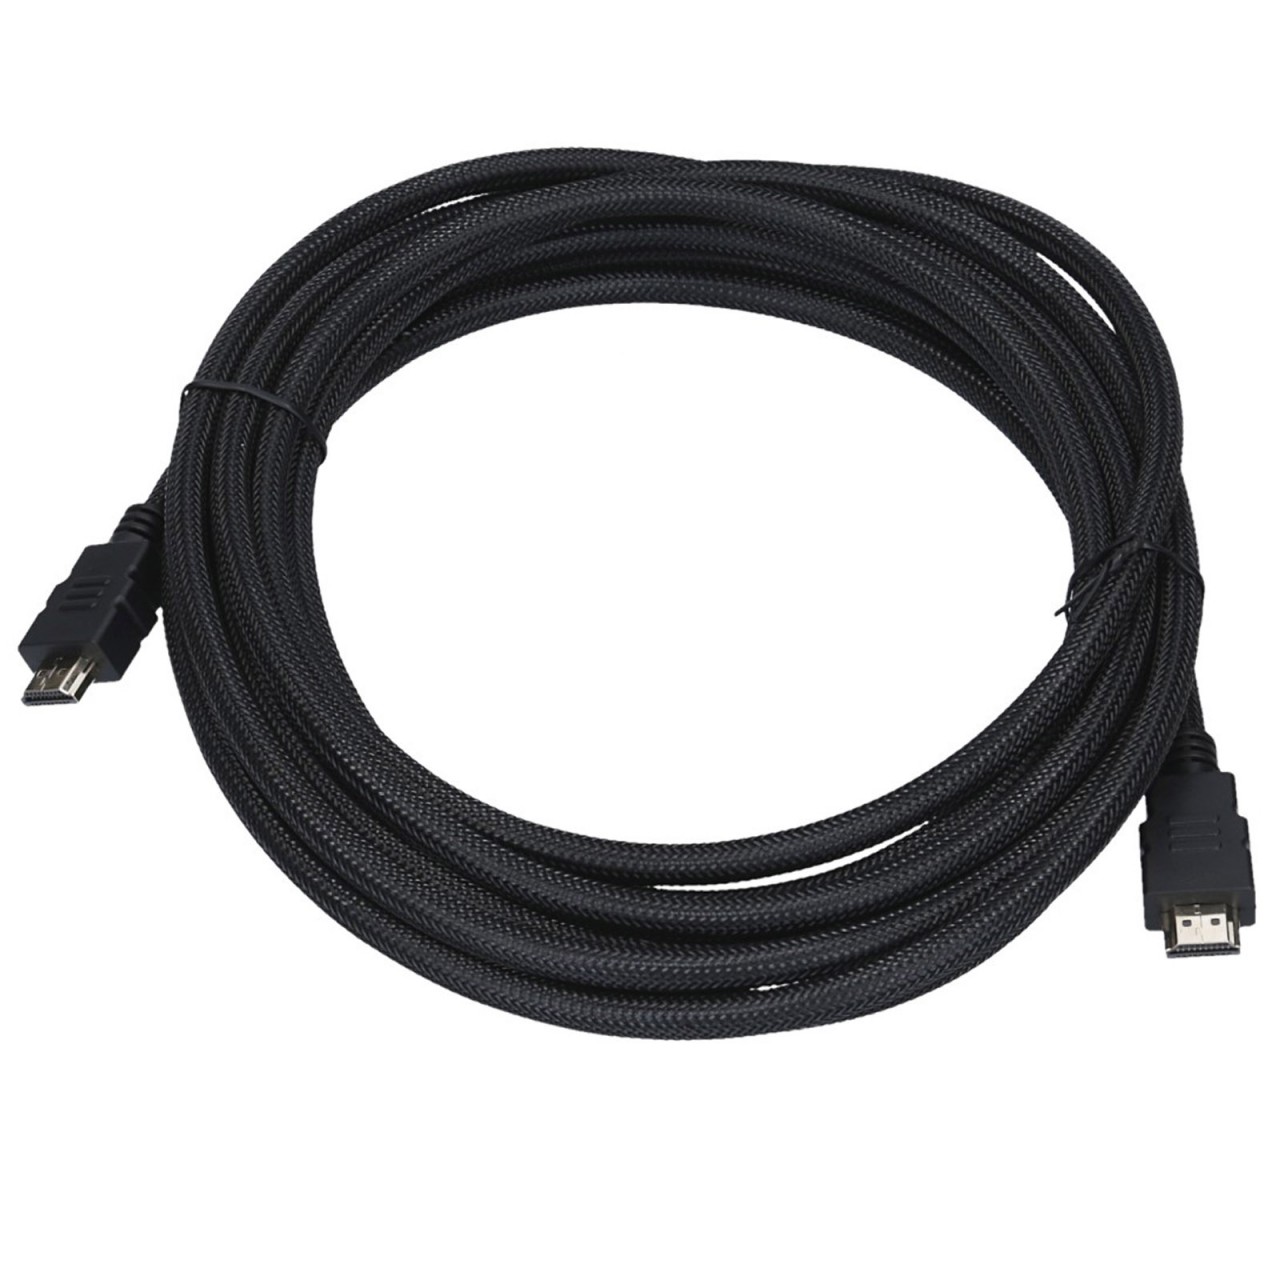 7 Meter HDMI-Kabel 4K für UHD oder FullHD. HDMI 2.0 High Speed mit Ethernet hat einen hochwertigen Nylongeflecht Design Aussenmantel.